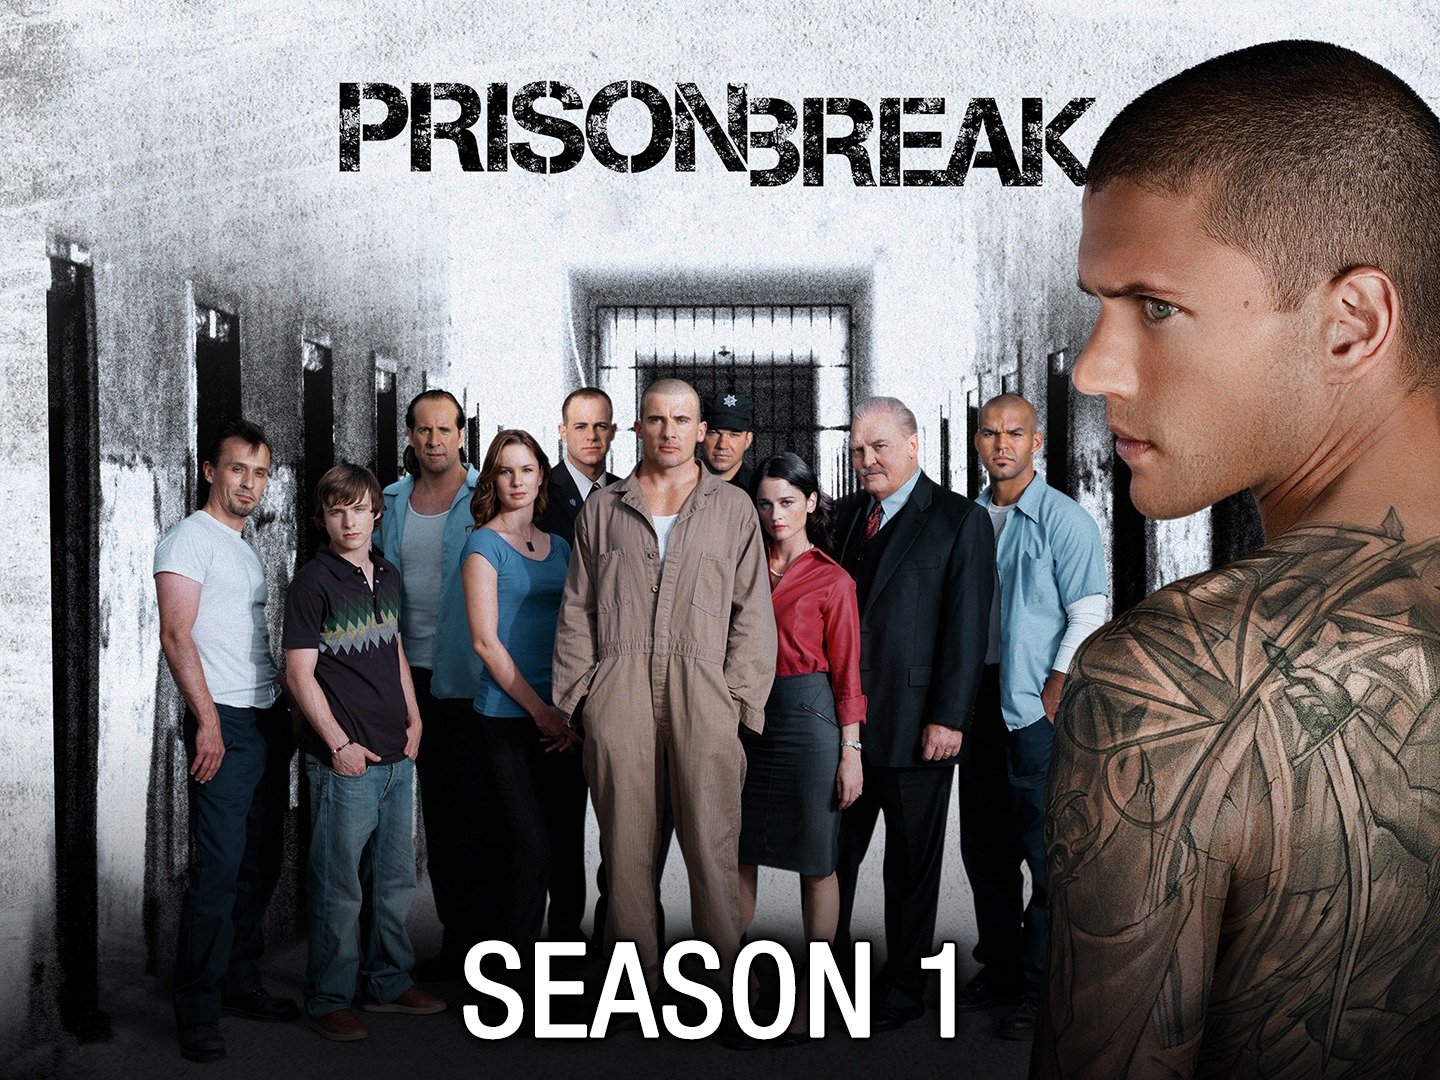 prison break season 1 summary